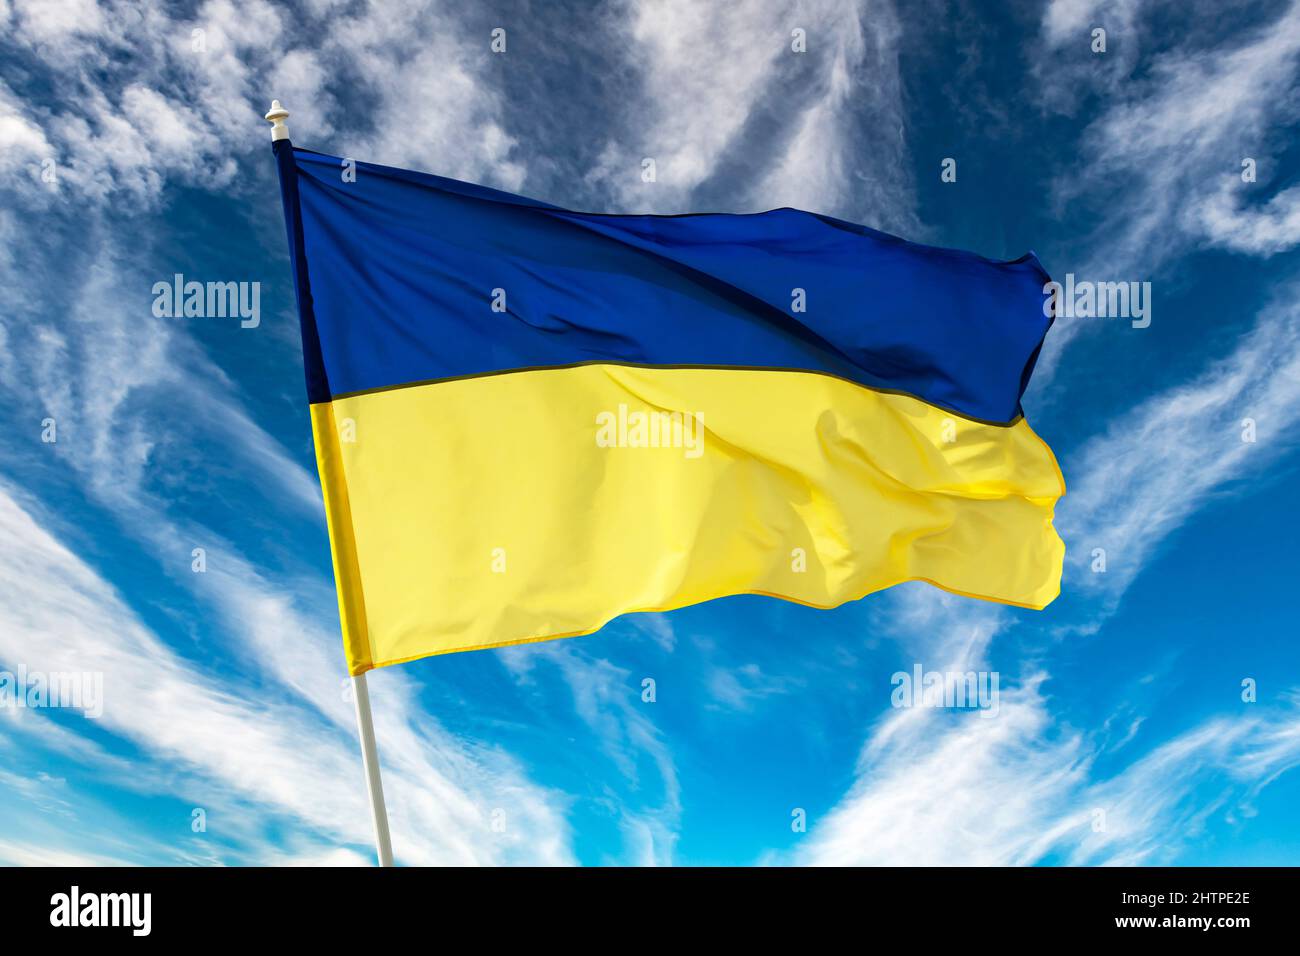 Drapeau national bicolore bleu et jaune ukrainien sur fond bleu ciel. Ukraine combat pour la liberté concept Banque D'Images